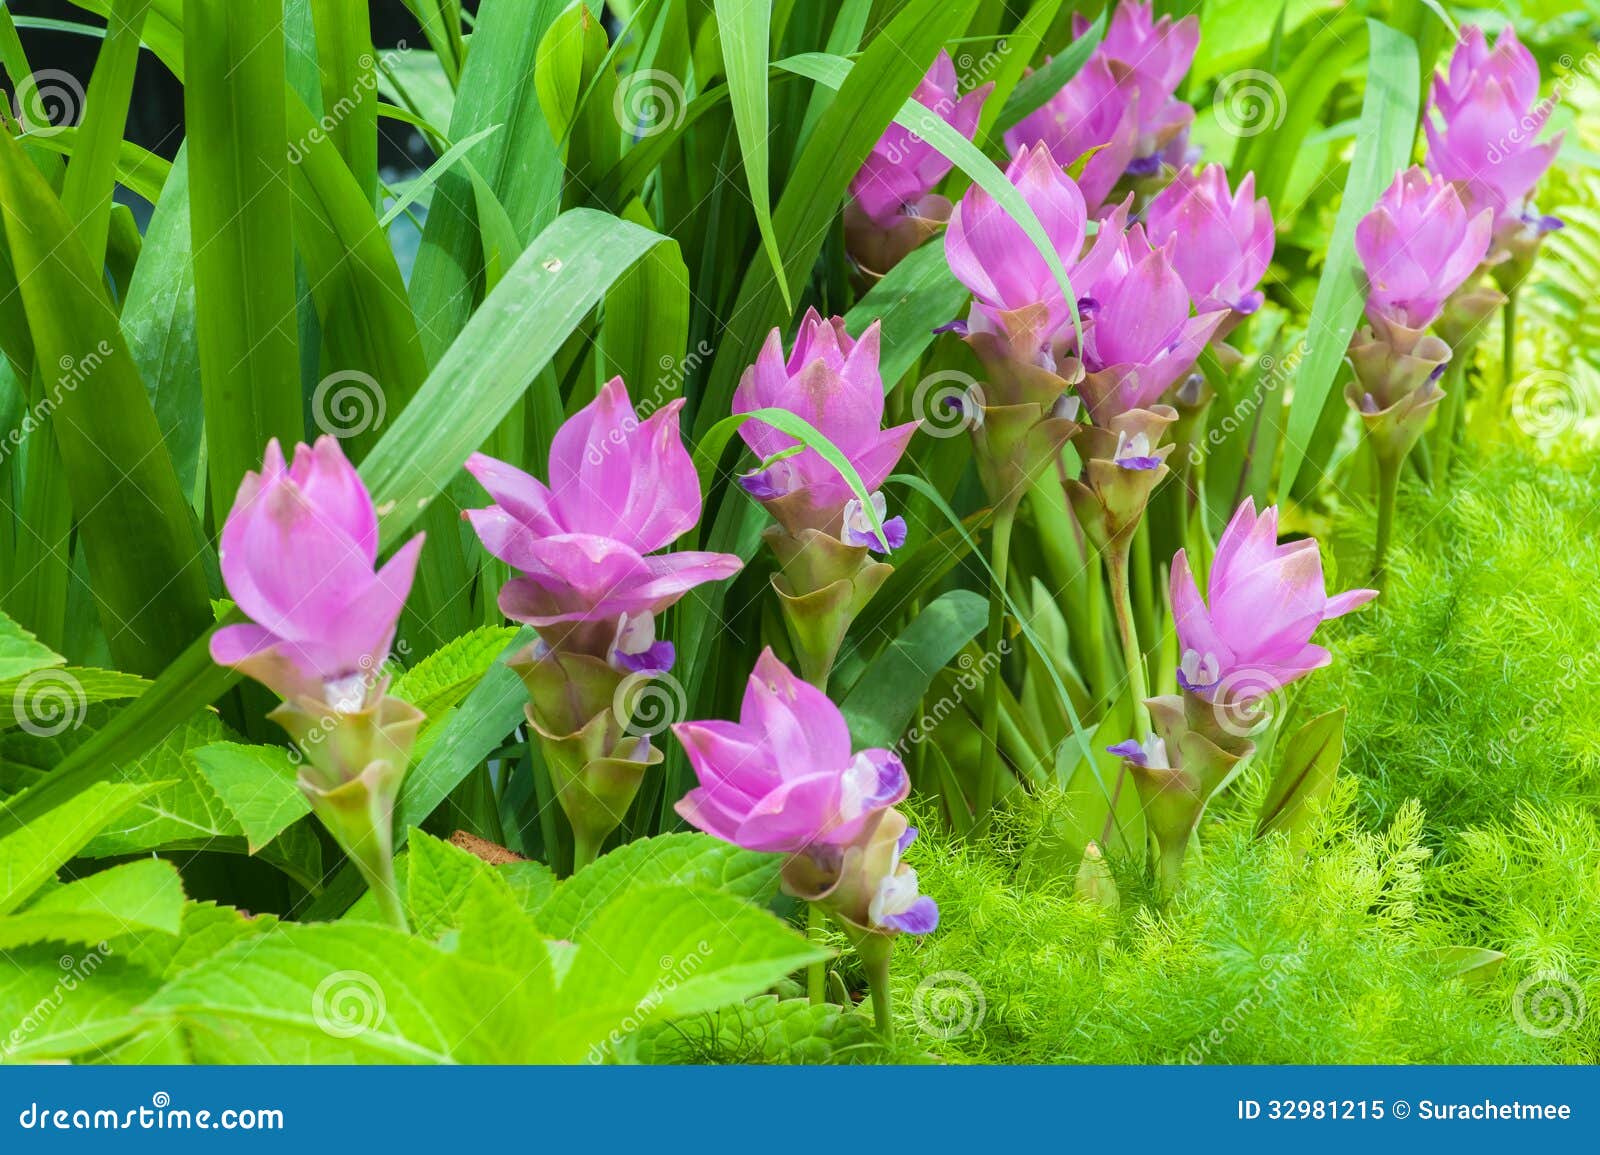 siam tulip flower on garden